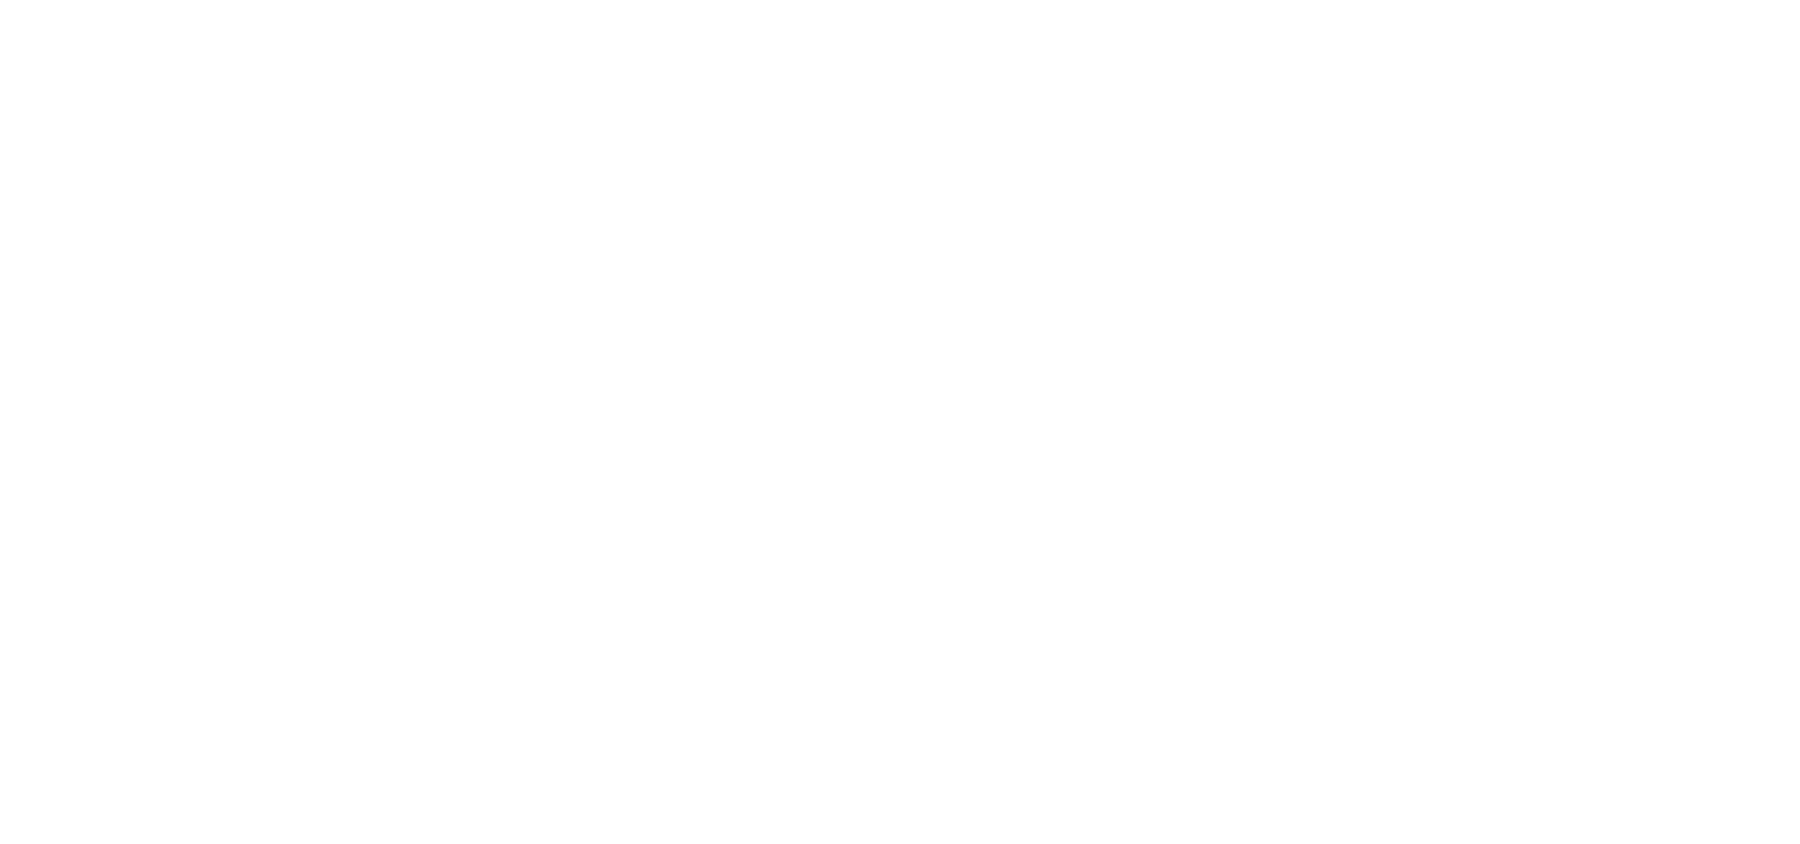 ENSIAS AI CLUB